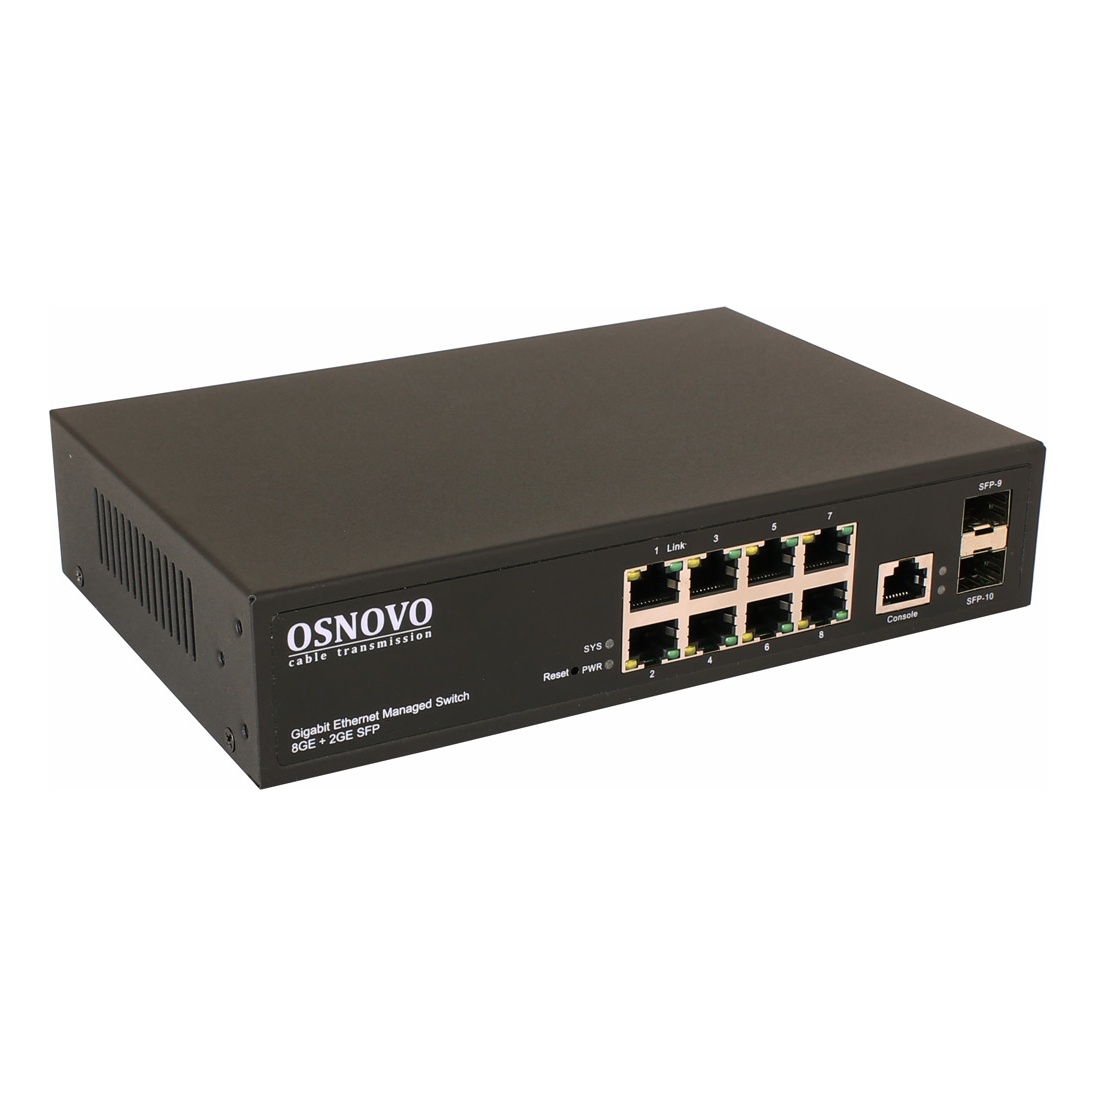 OSNOVO SW-70802/L2 SW-70802/L2 SW-70802/L2 Управляемый (L2+) коммутатор Gigabit Ethernet на 10 портов